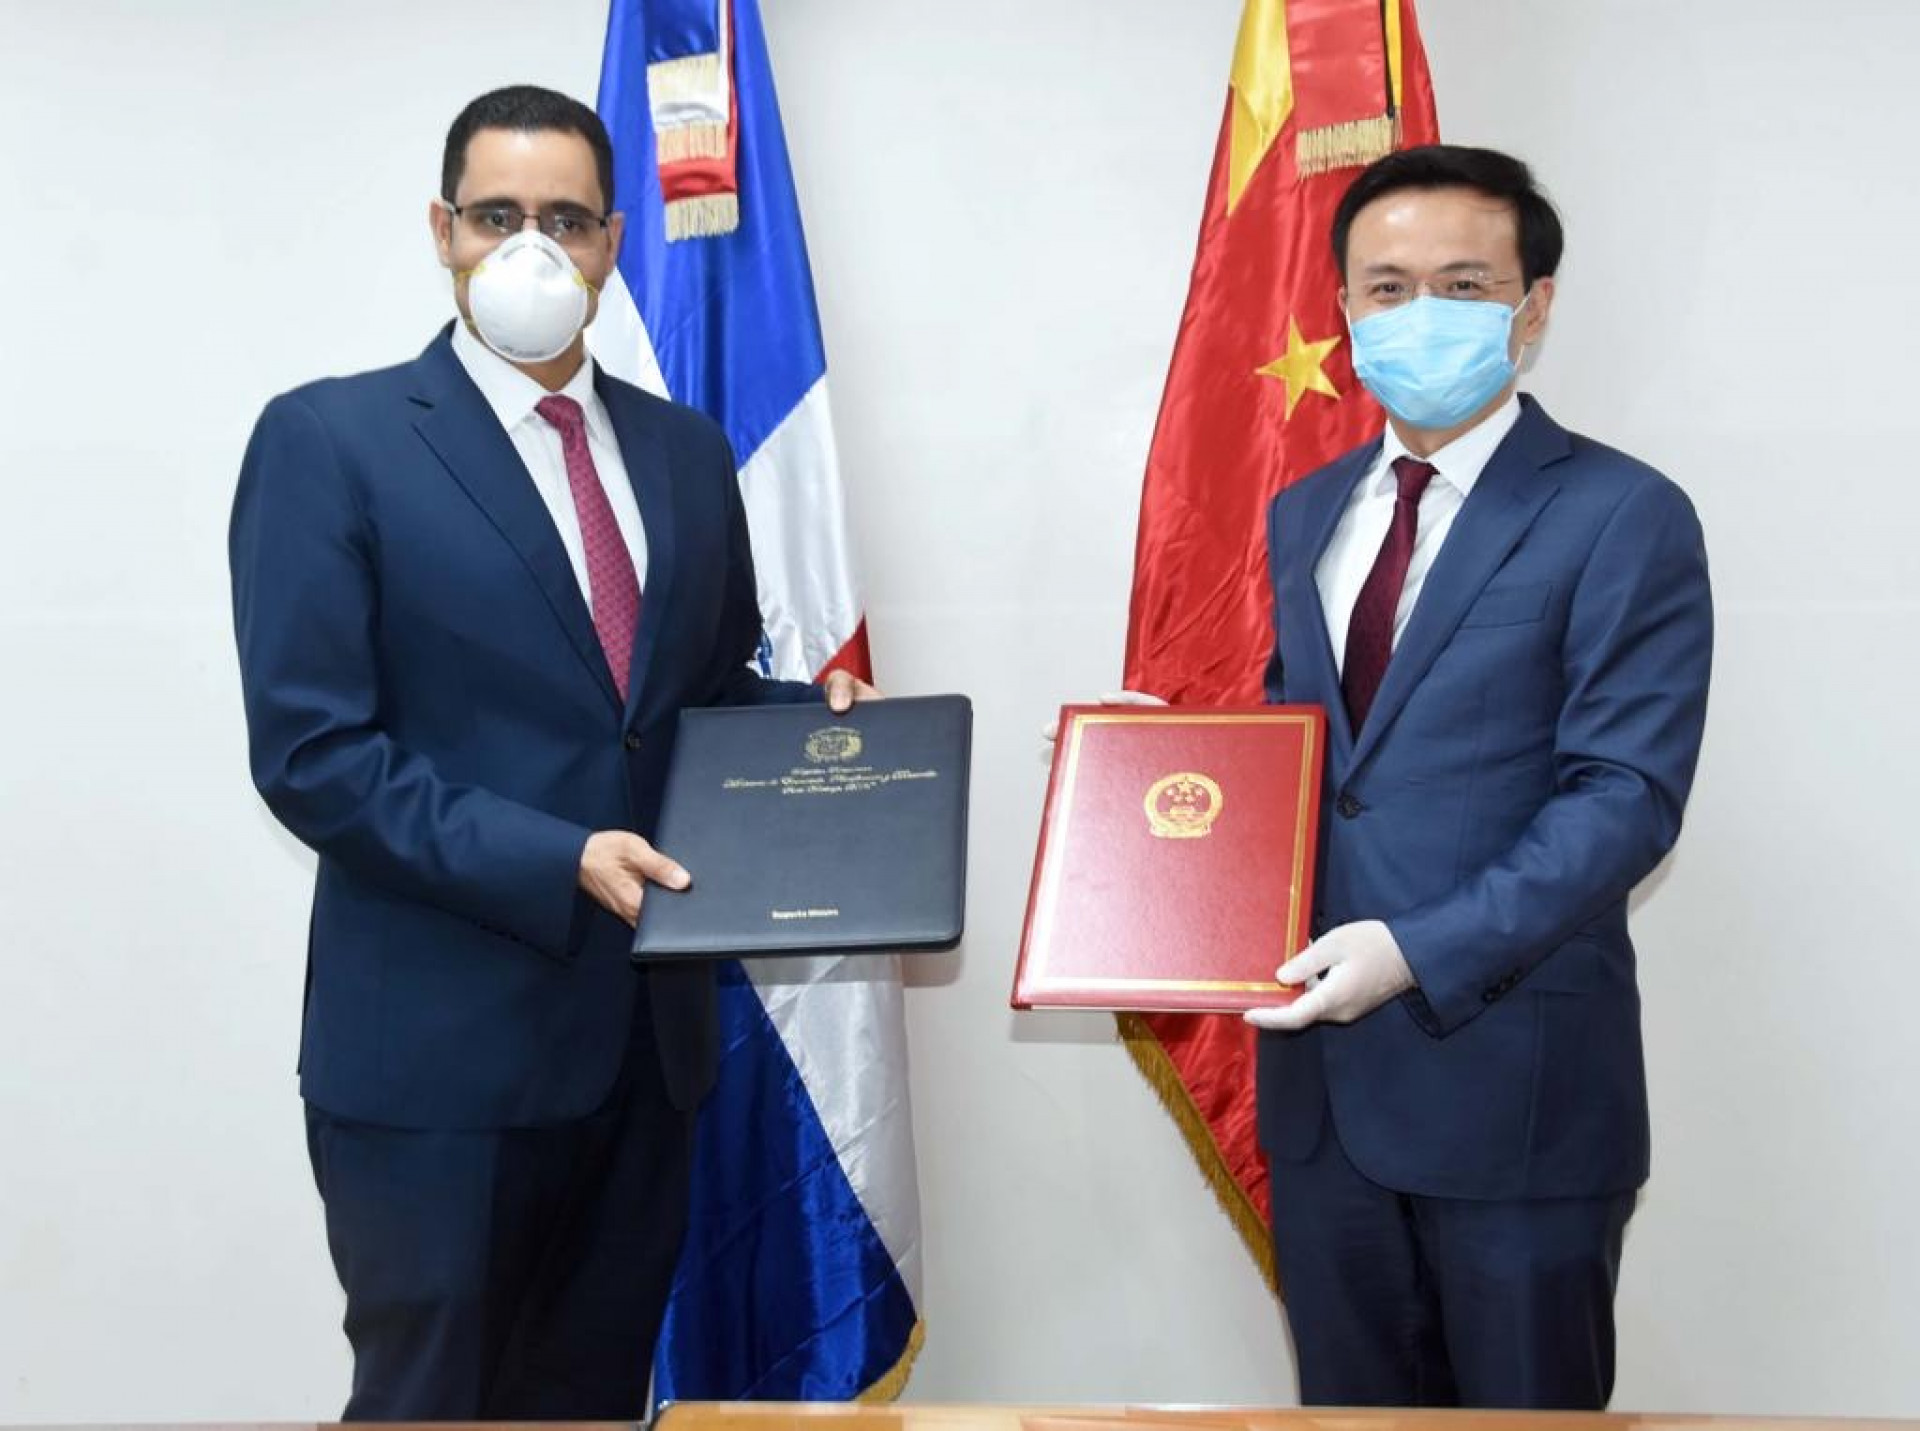 REPÚBLICA DOMINICANA: República Popular China dona a RD lote de materiales antiepidémicos por valor de 700, 000 yuanes RMB para combatir el COVID-19